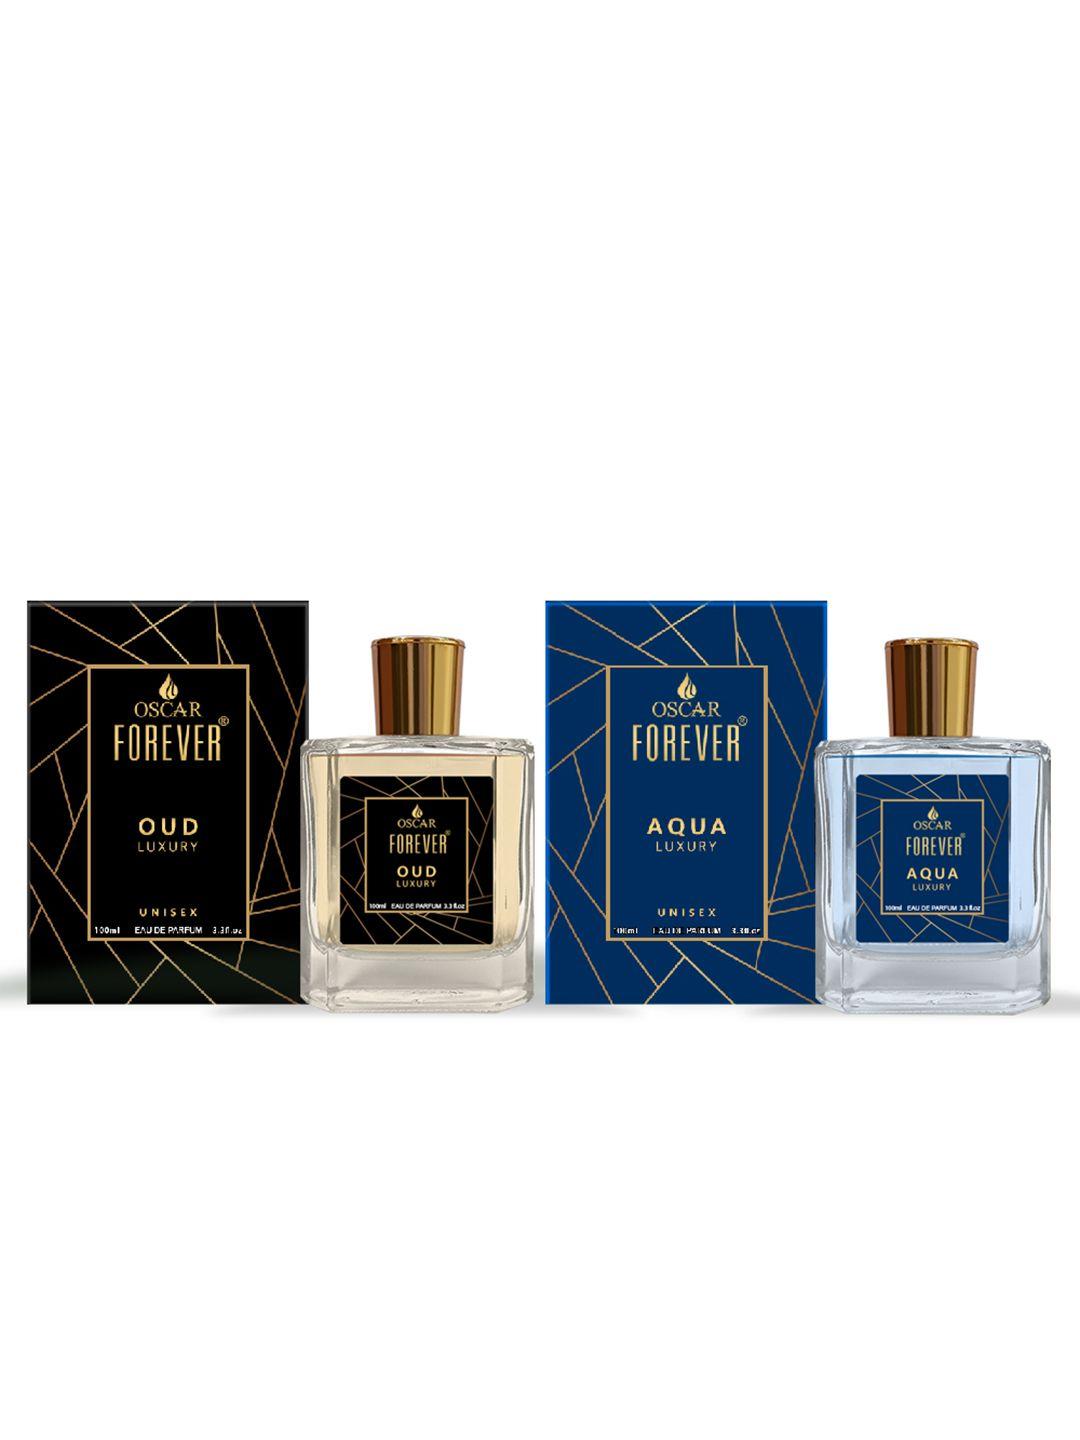 oscar forever set of 2 aqua & oud luxury long lasting eau de perfume - 100ml each